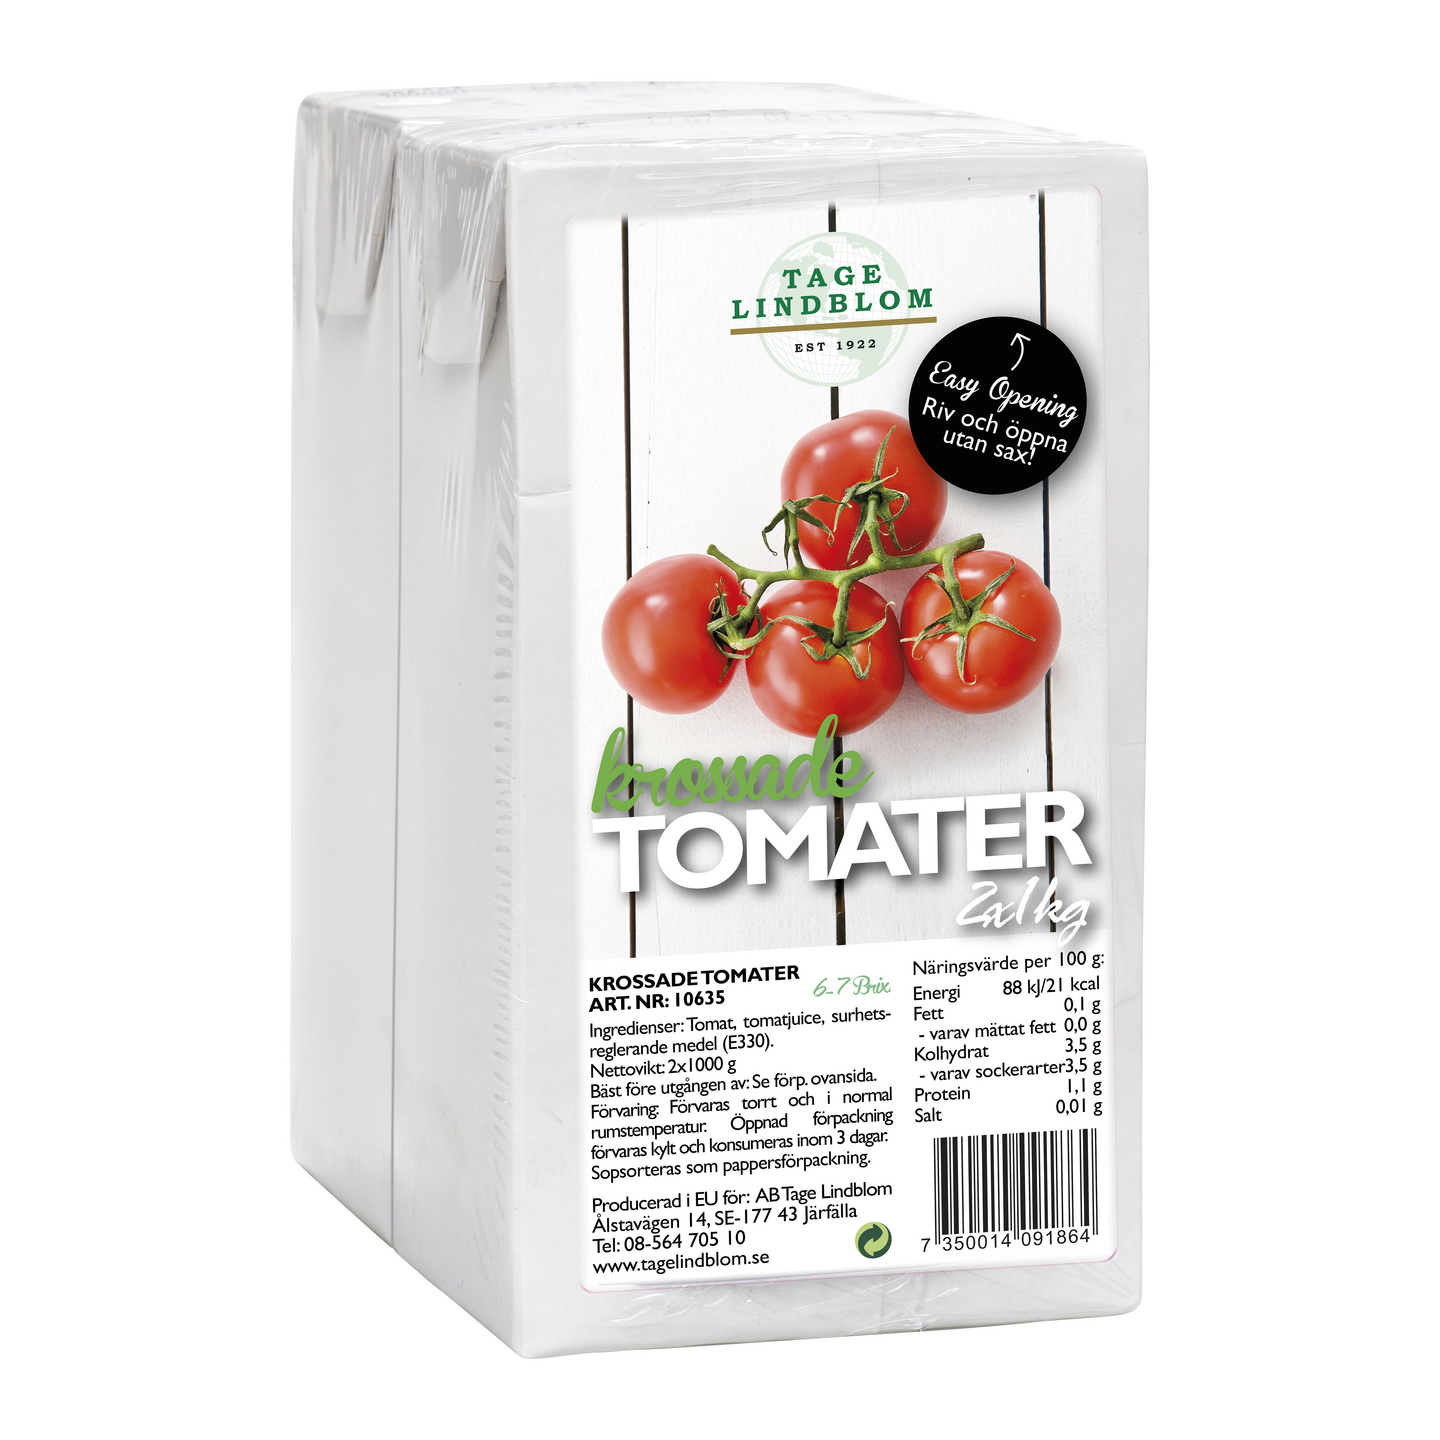 Tage Lindblom tomaattimurska tetra 2x1kg